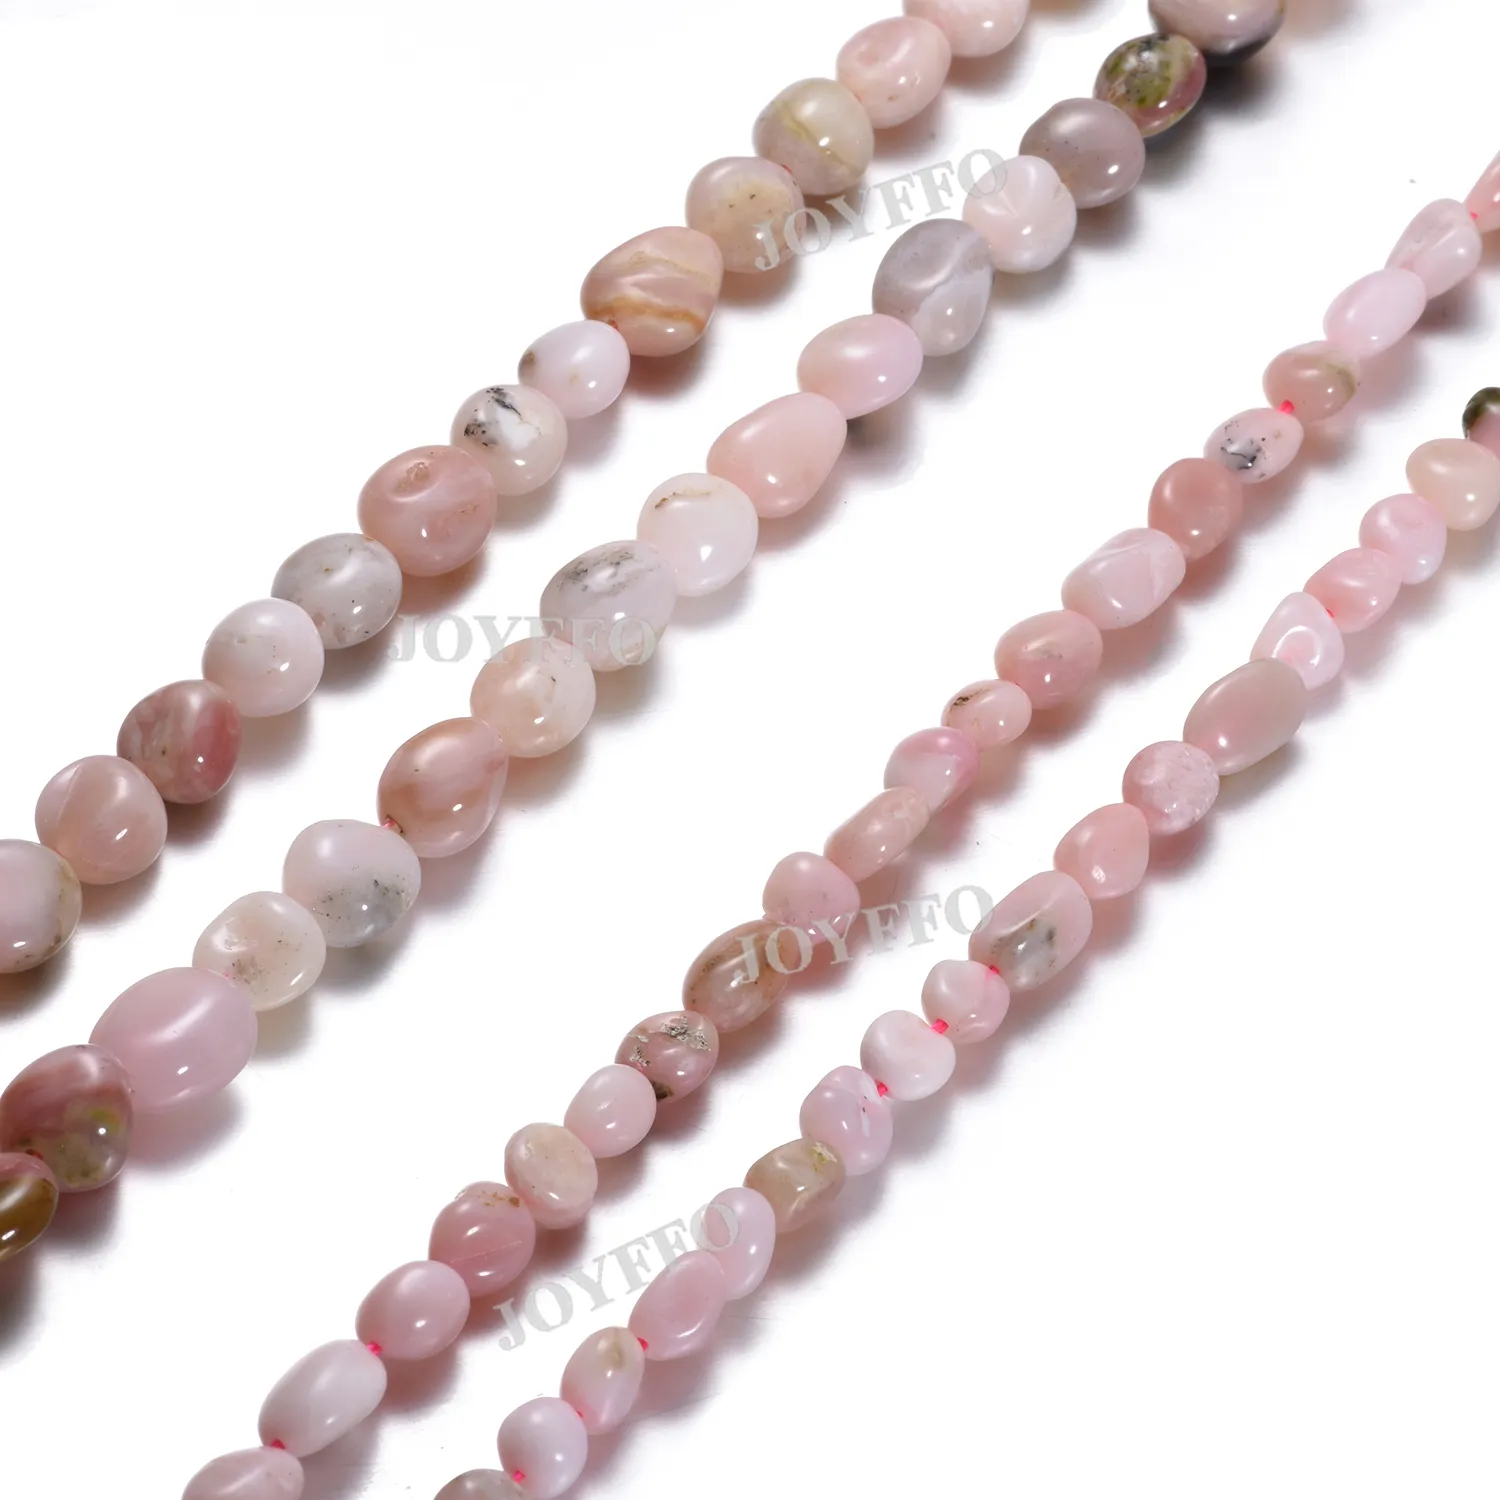 Hohe Qualität Glatte Rosa Opal Perlen Strang Unregelmäßige form 6*8mm 8*10mm Natürliche Lose Edelstein perlen Für Schmuck